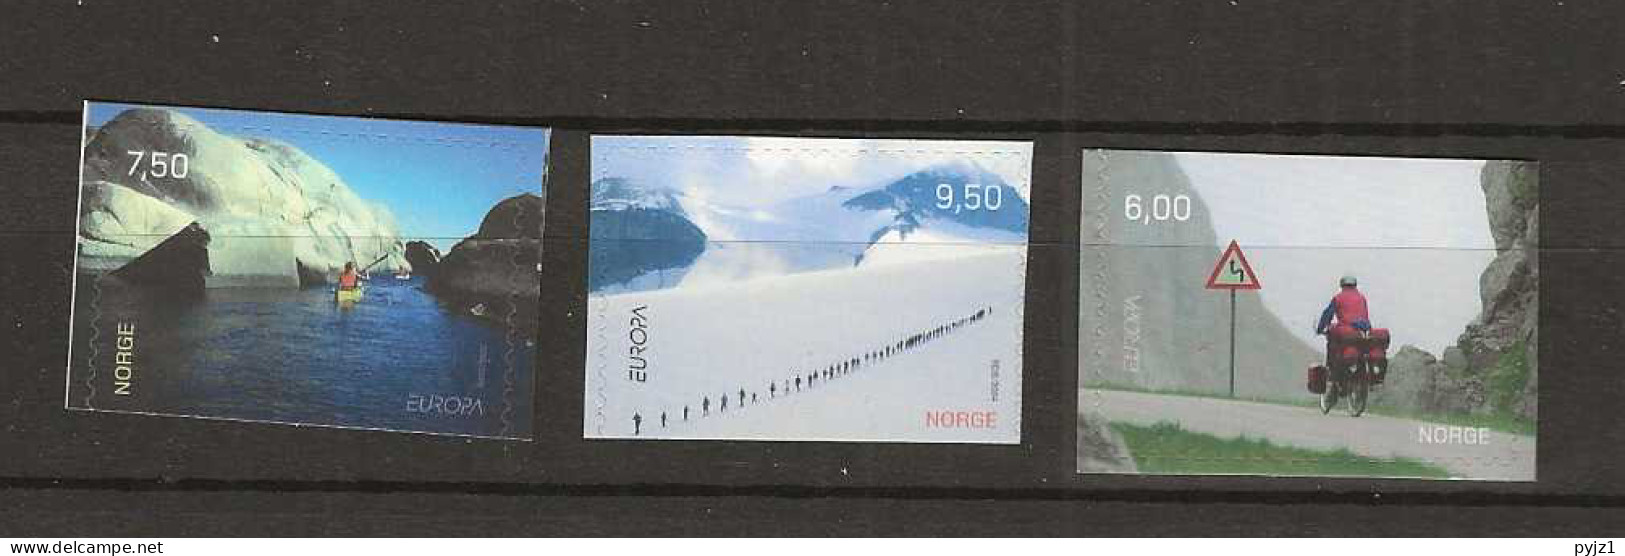 2004 MNH Norway, Mi 1497-99 Postfris** - Unused Stamps